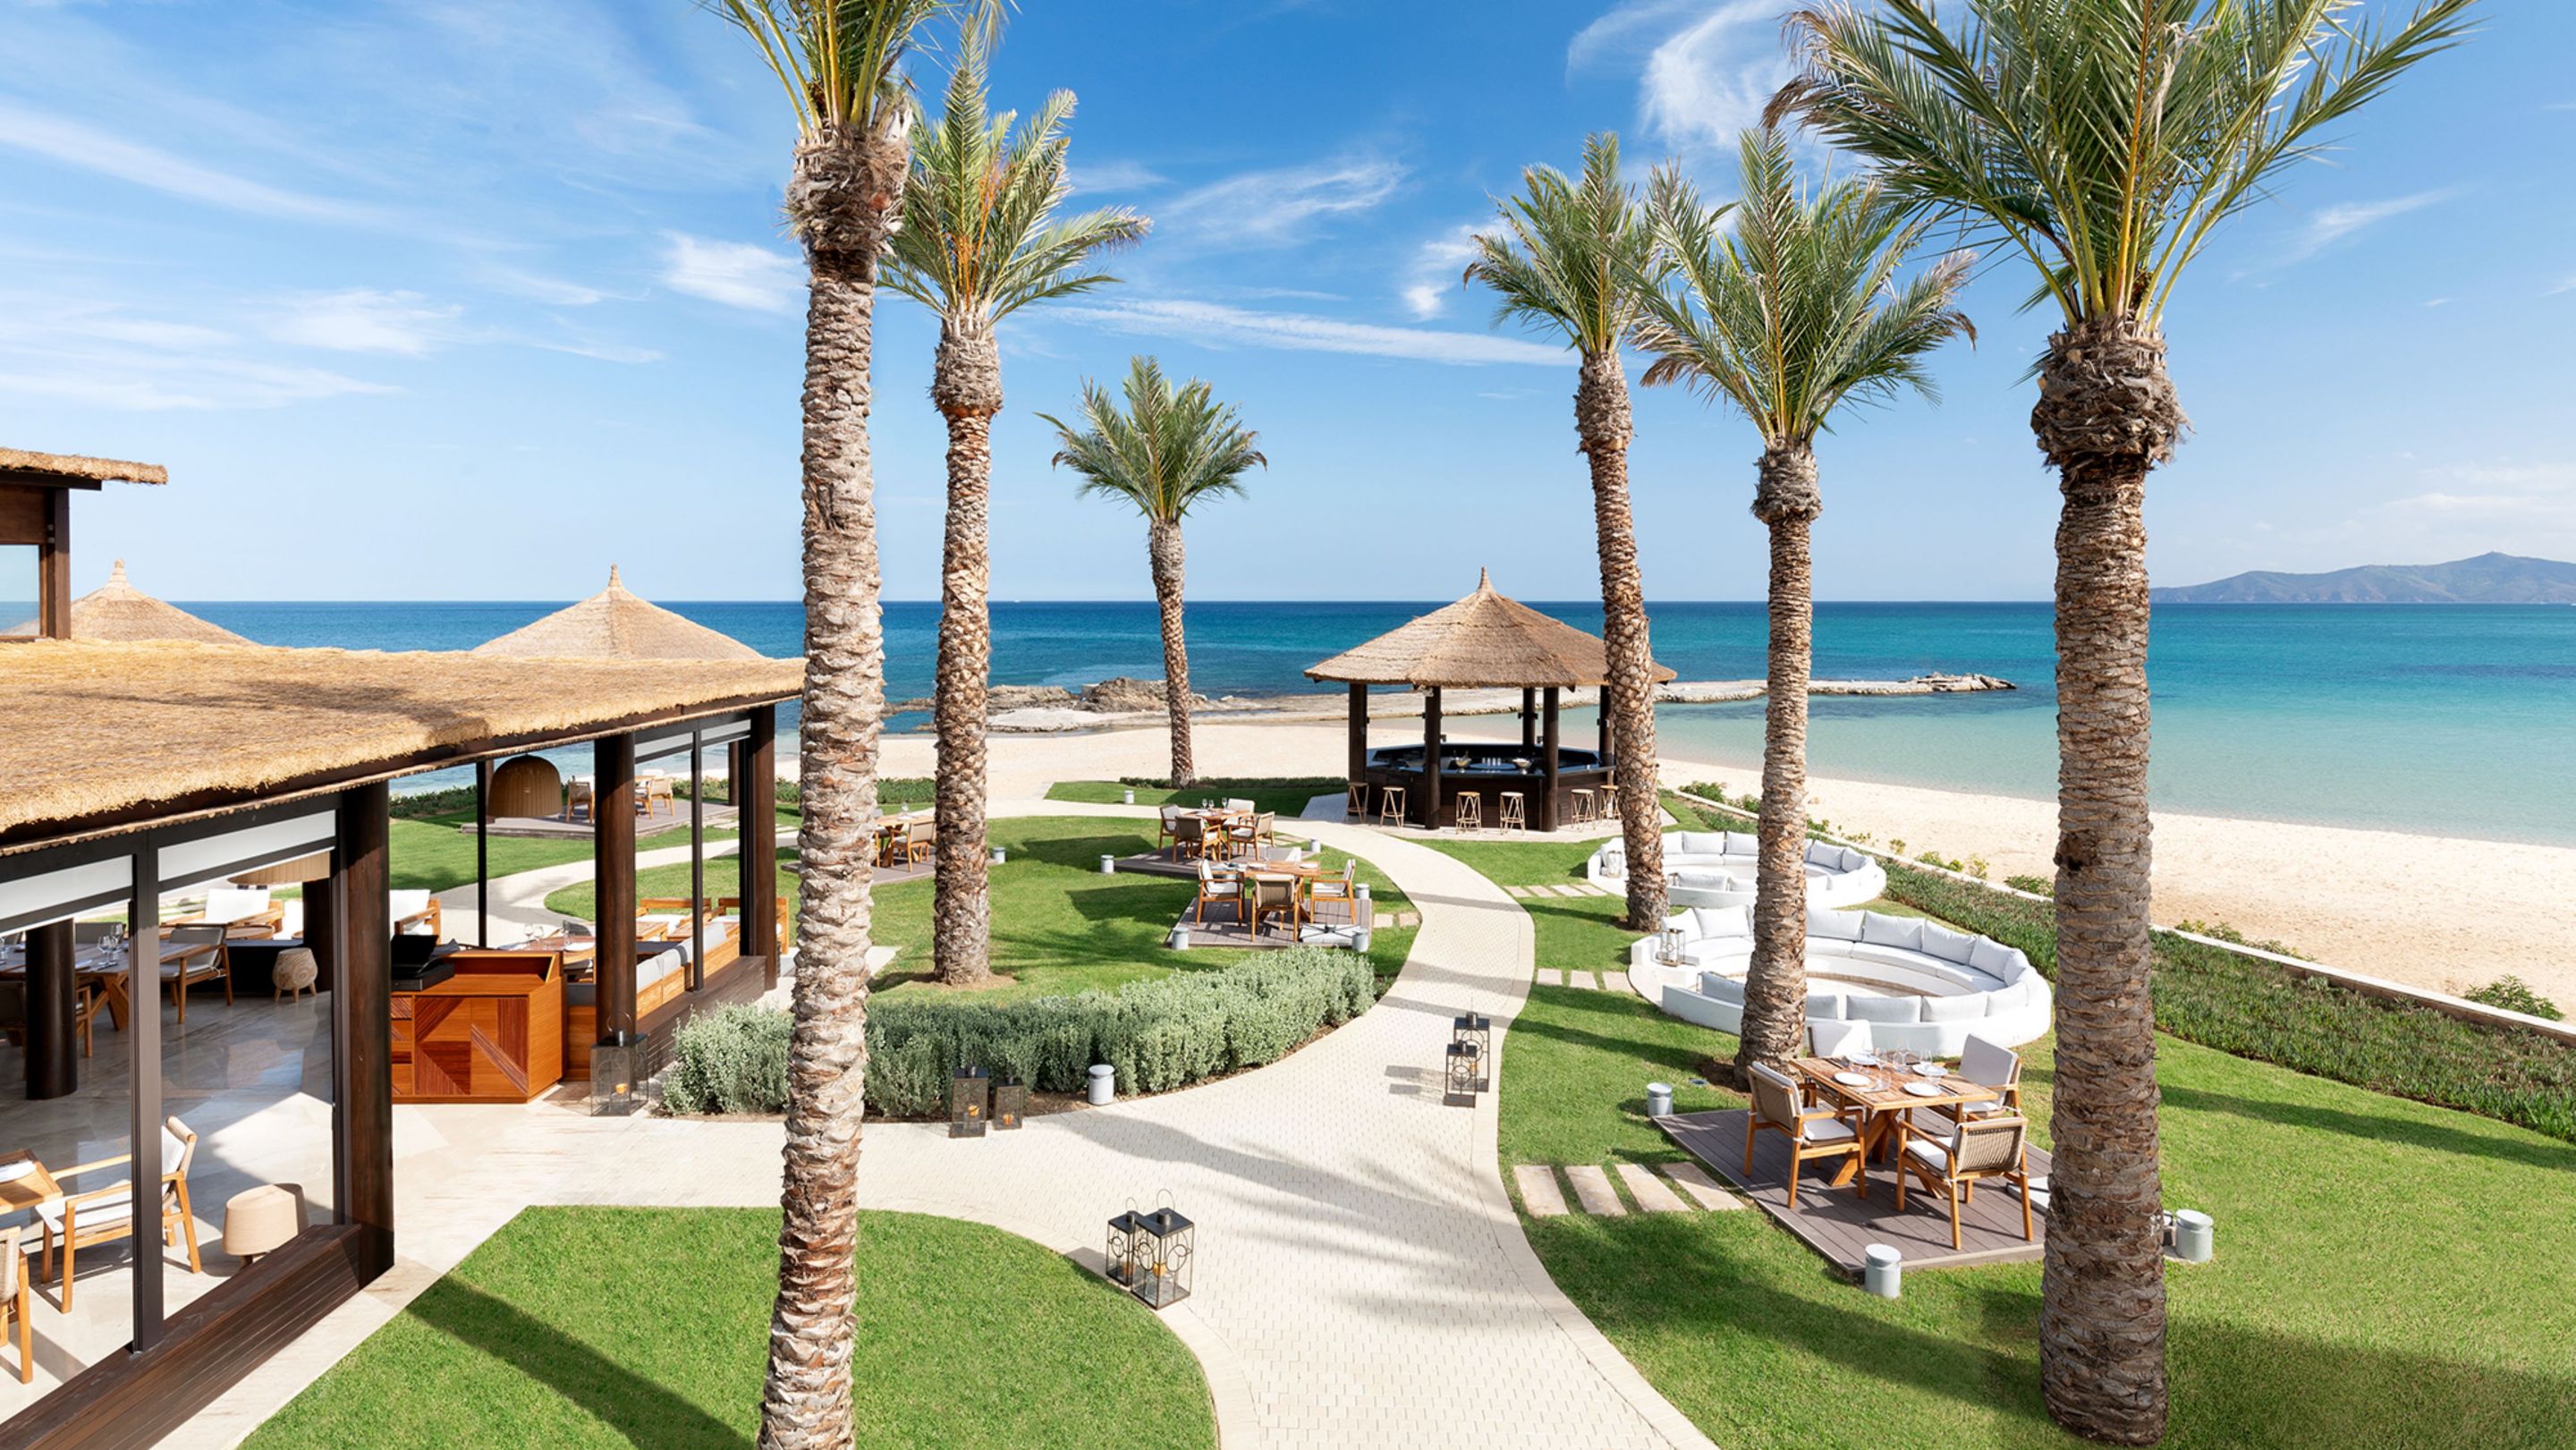 Beach Restaurant & Grill - Mediterranean View